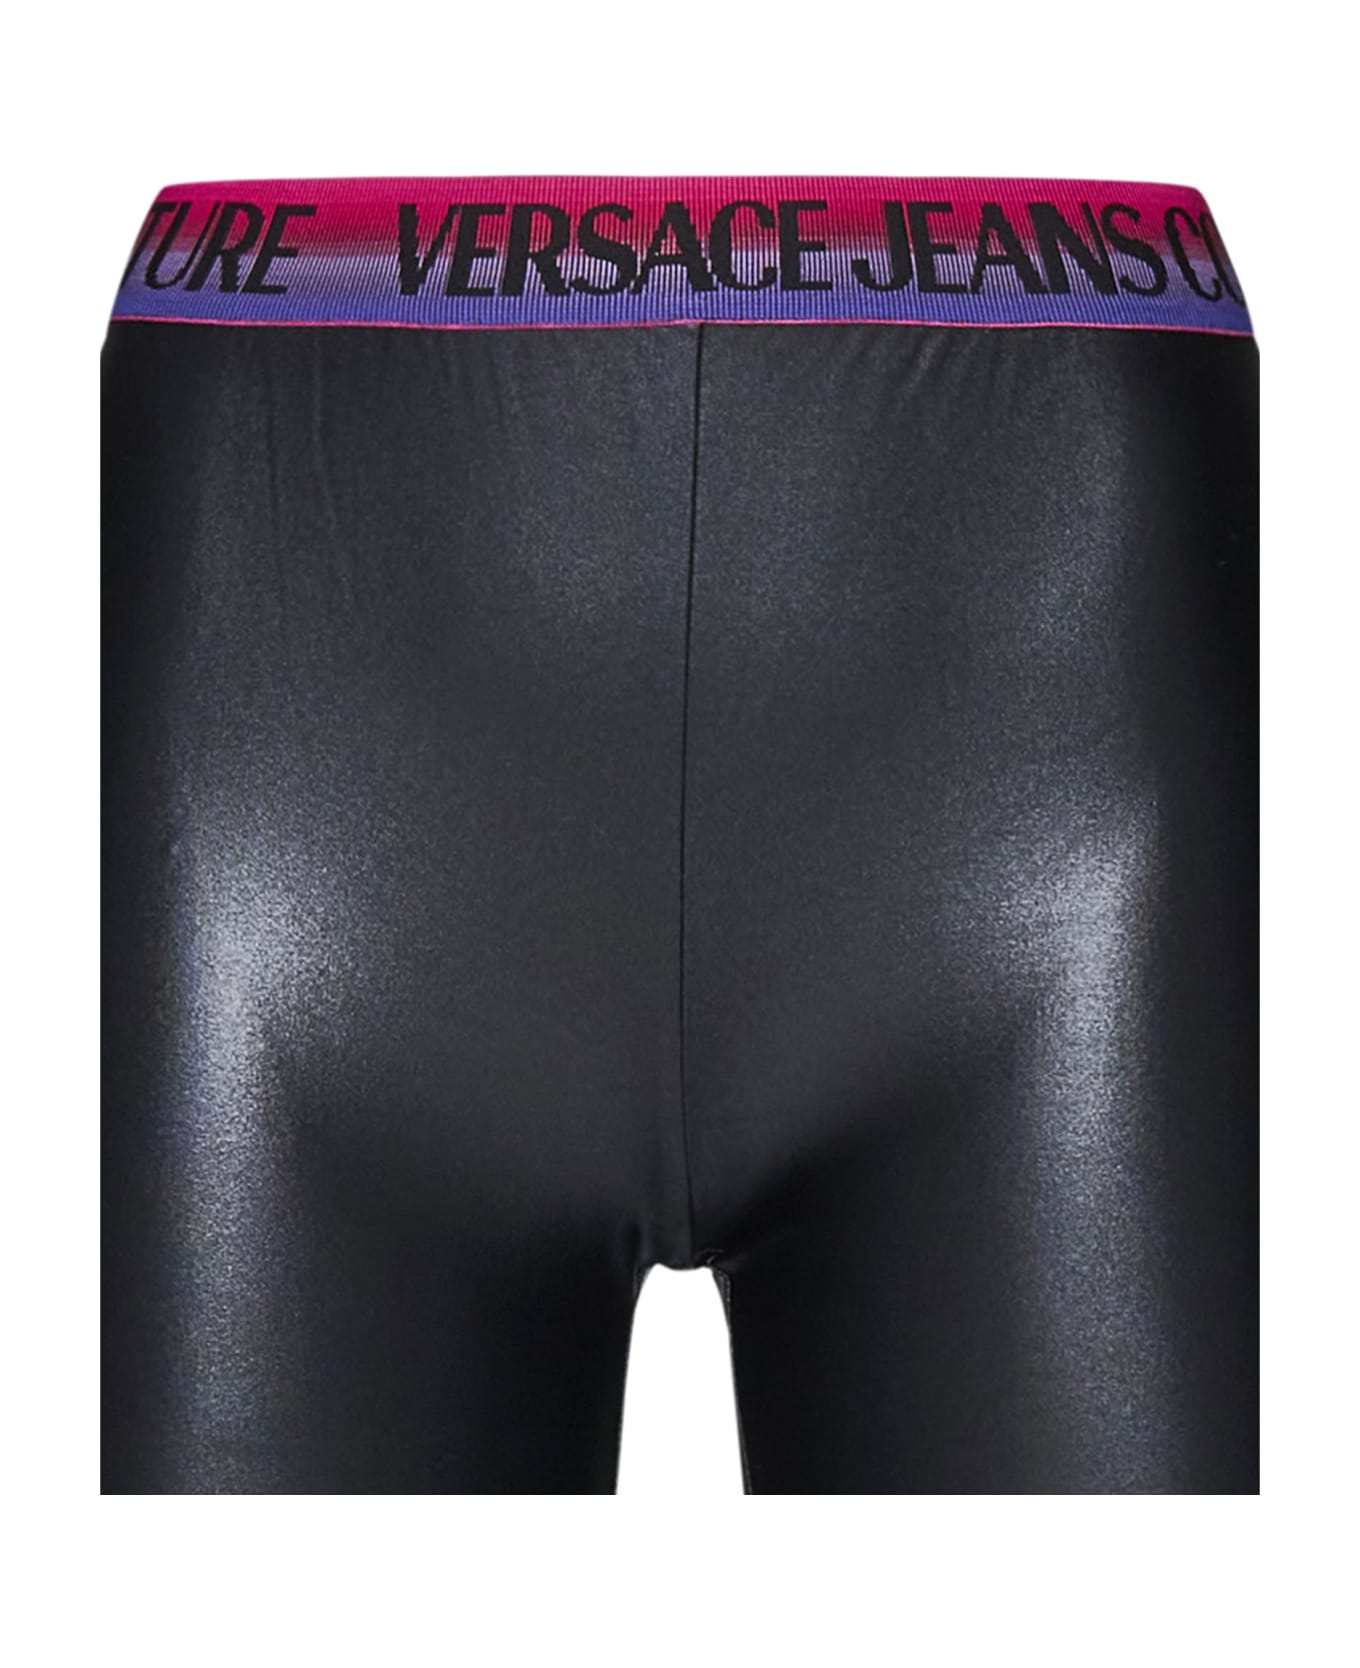 Versace Jeans Couture Short Leggings - Black